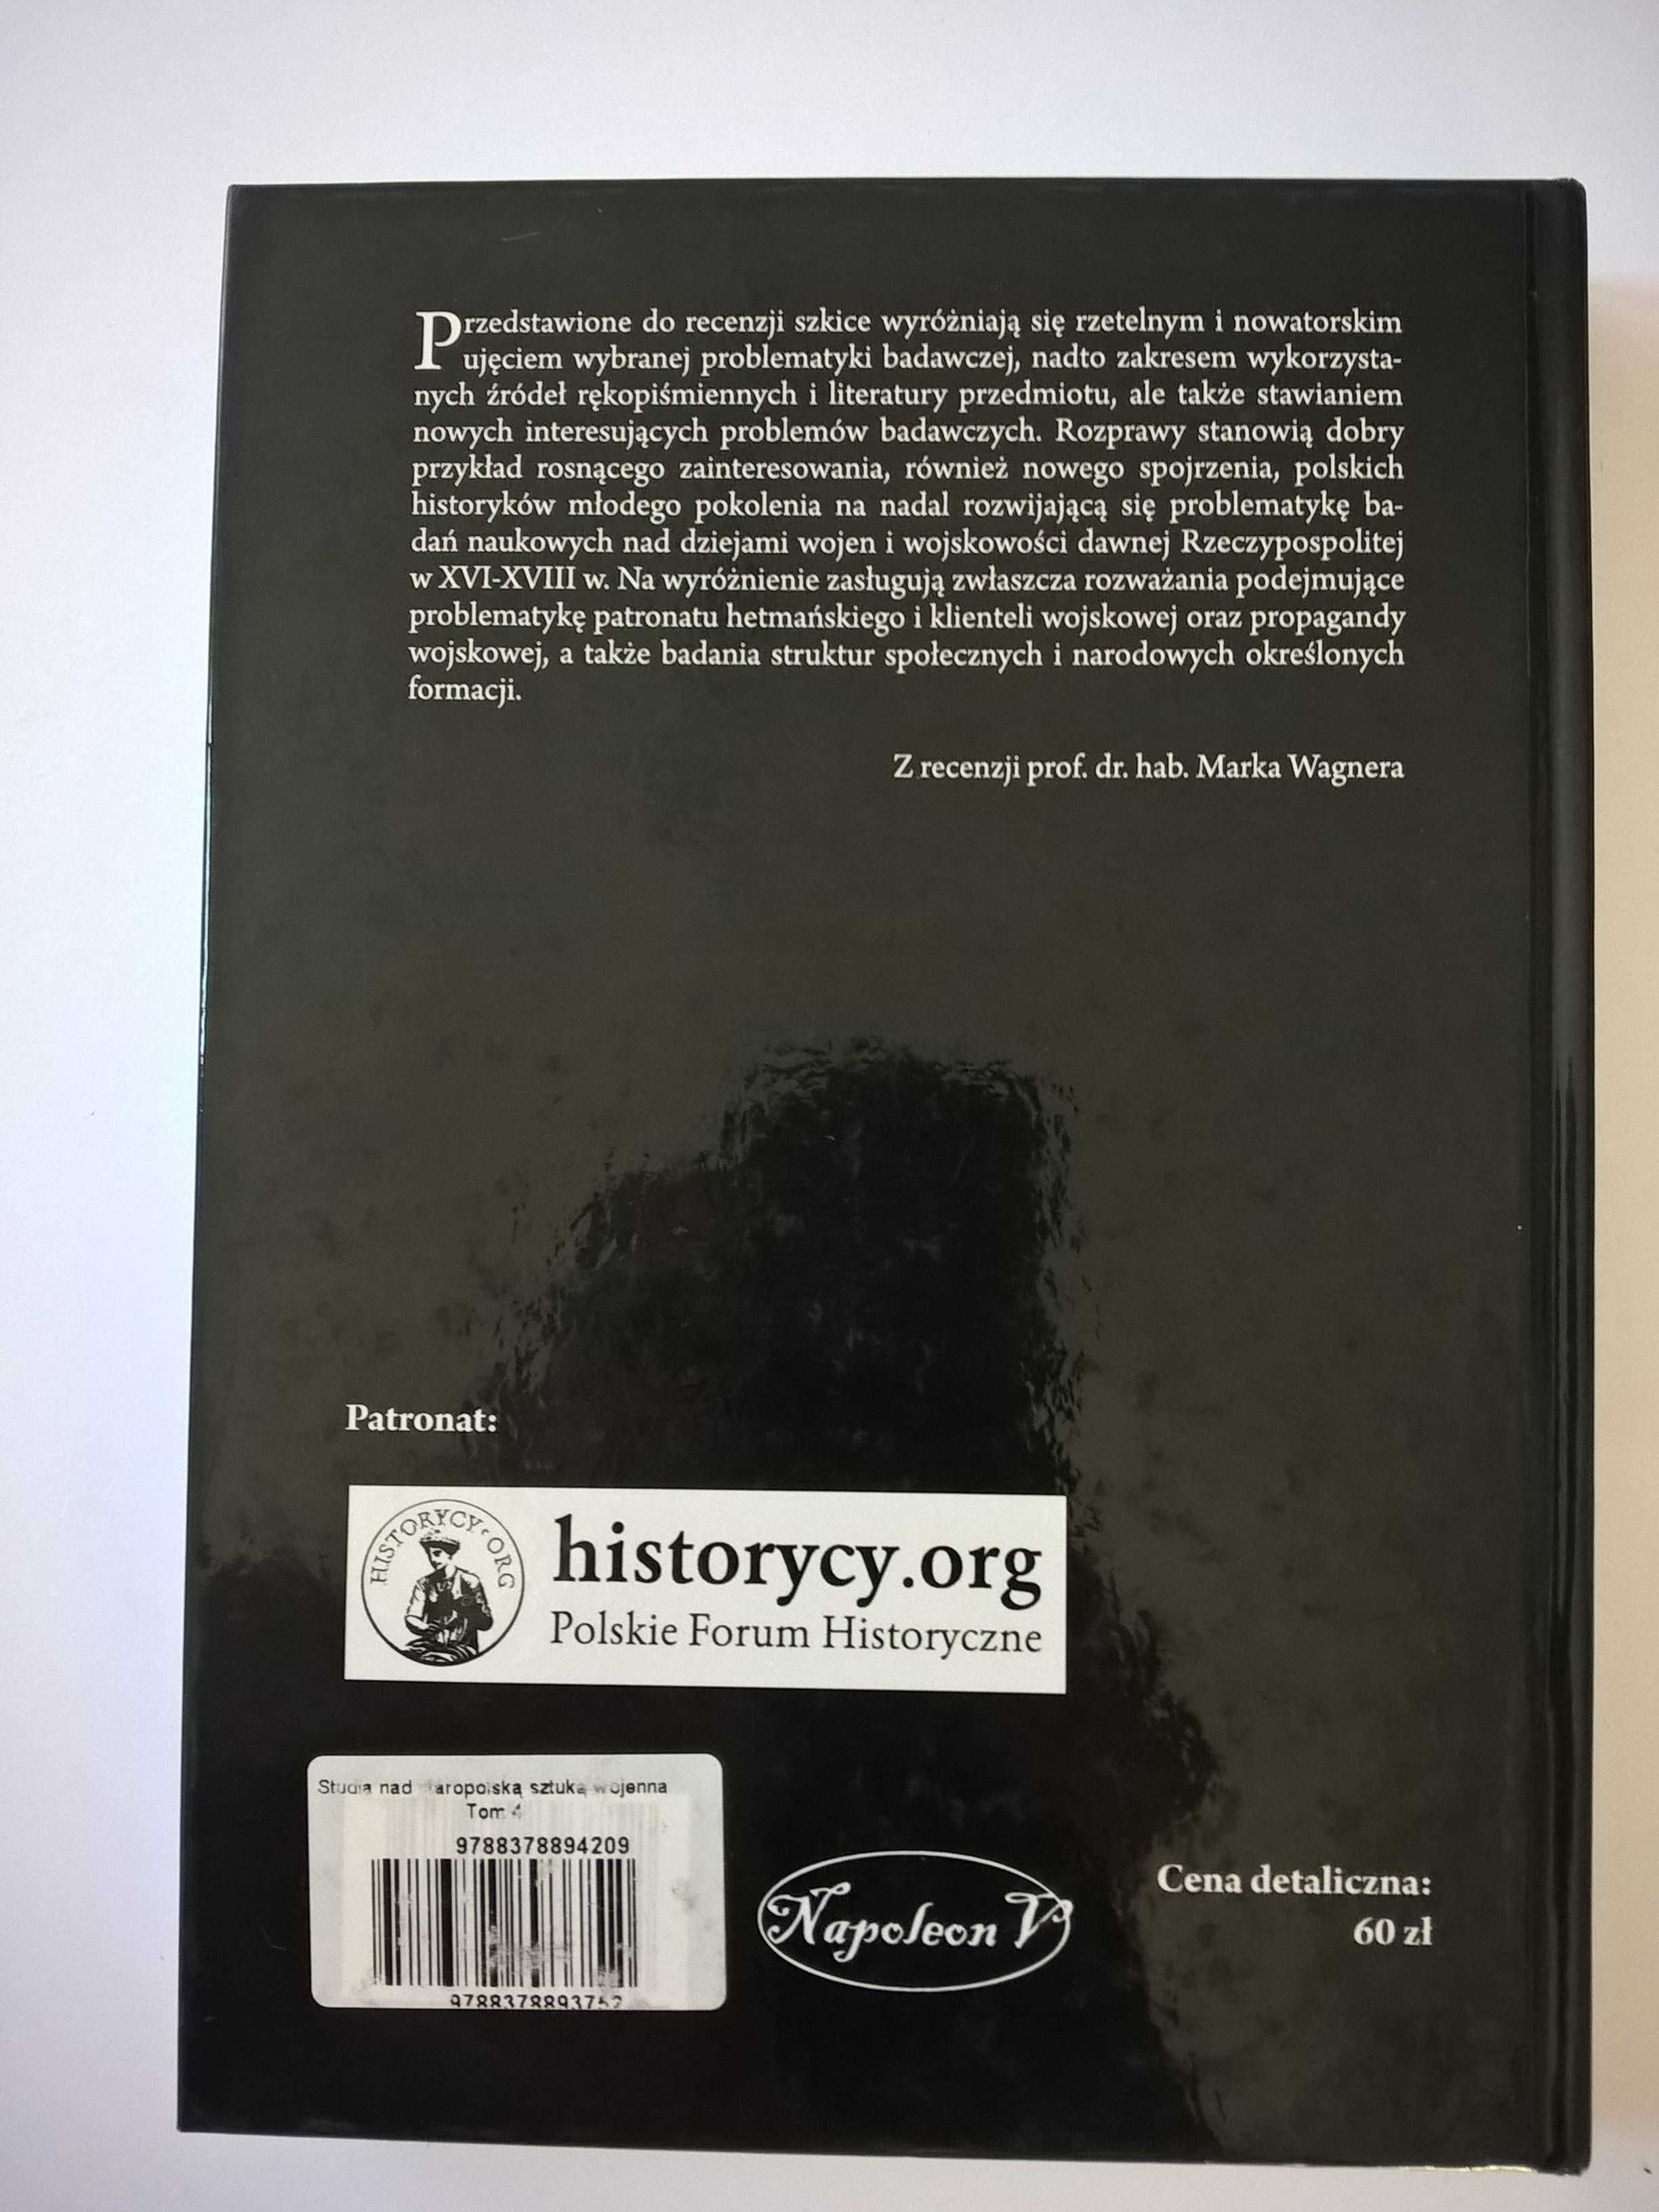 książka "Studia nad staropolską sztuką wojenną IV"